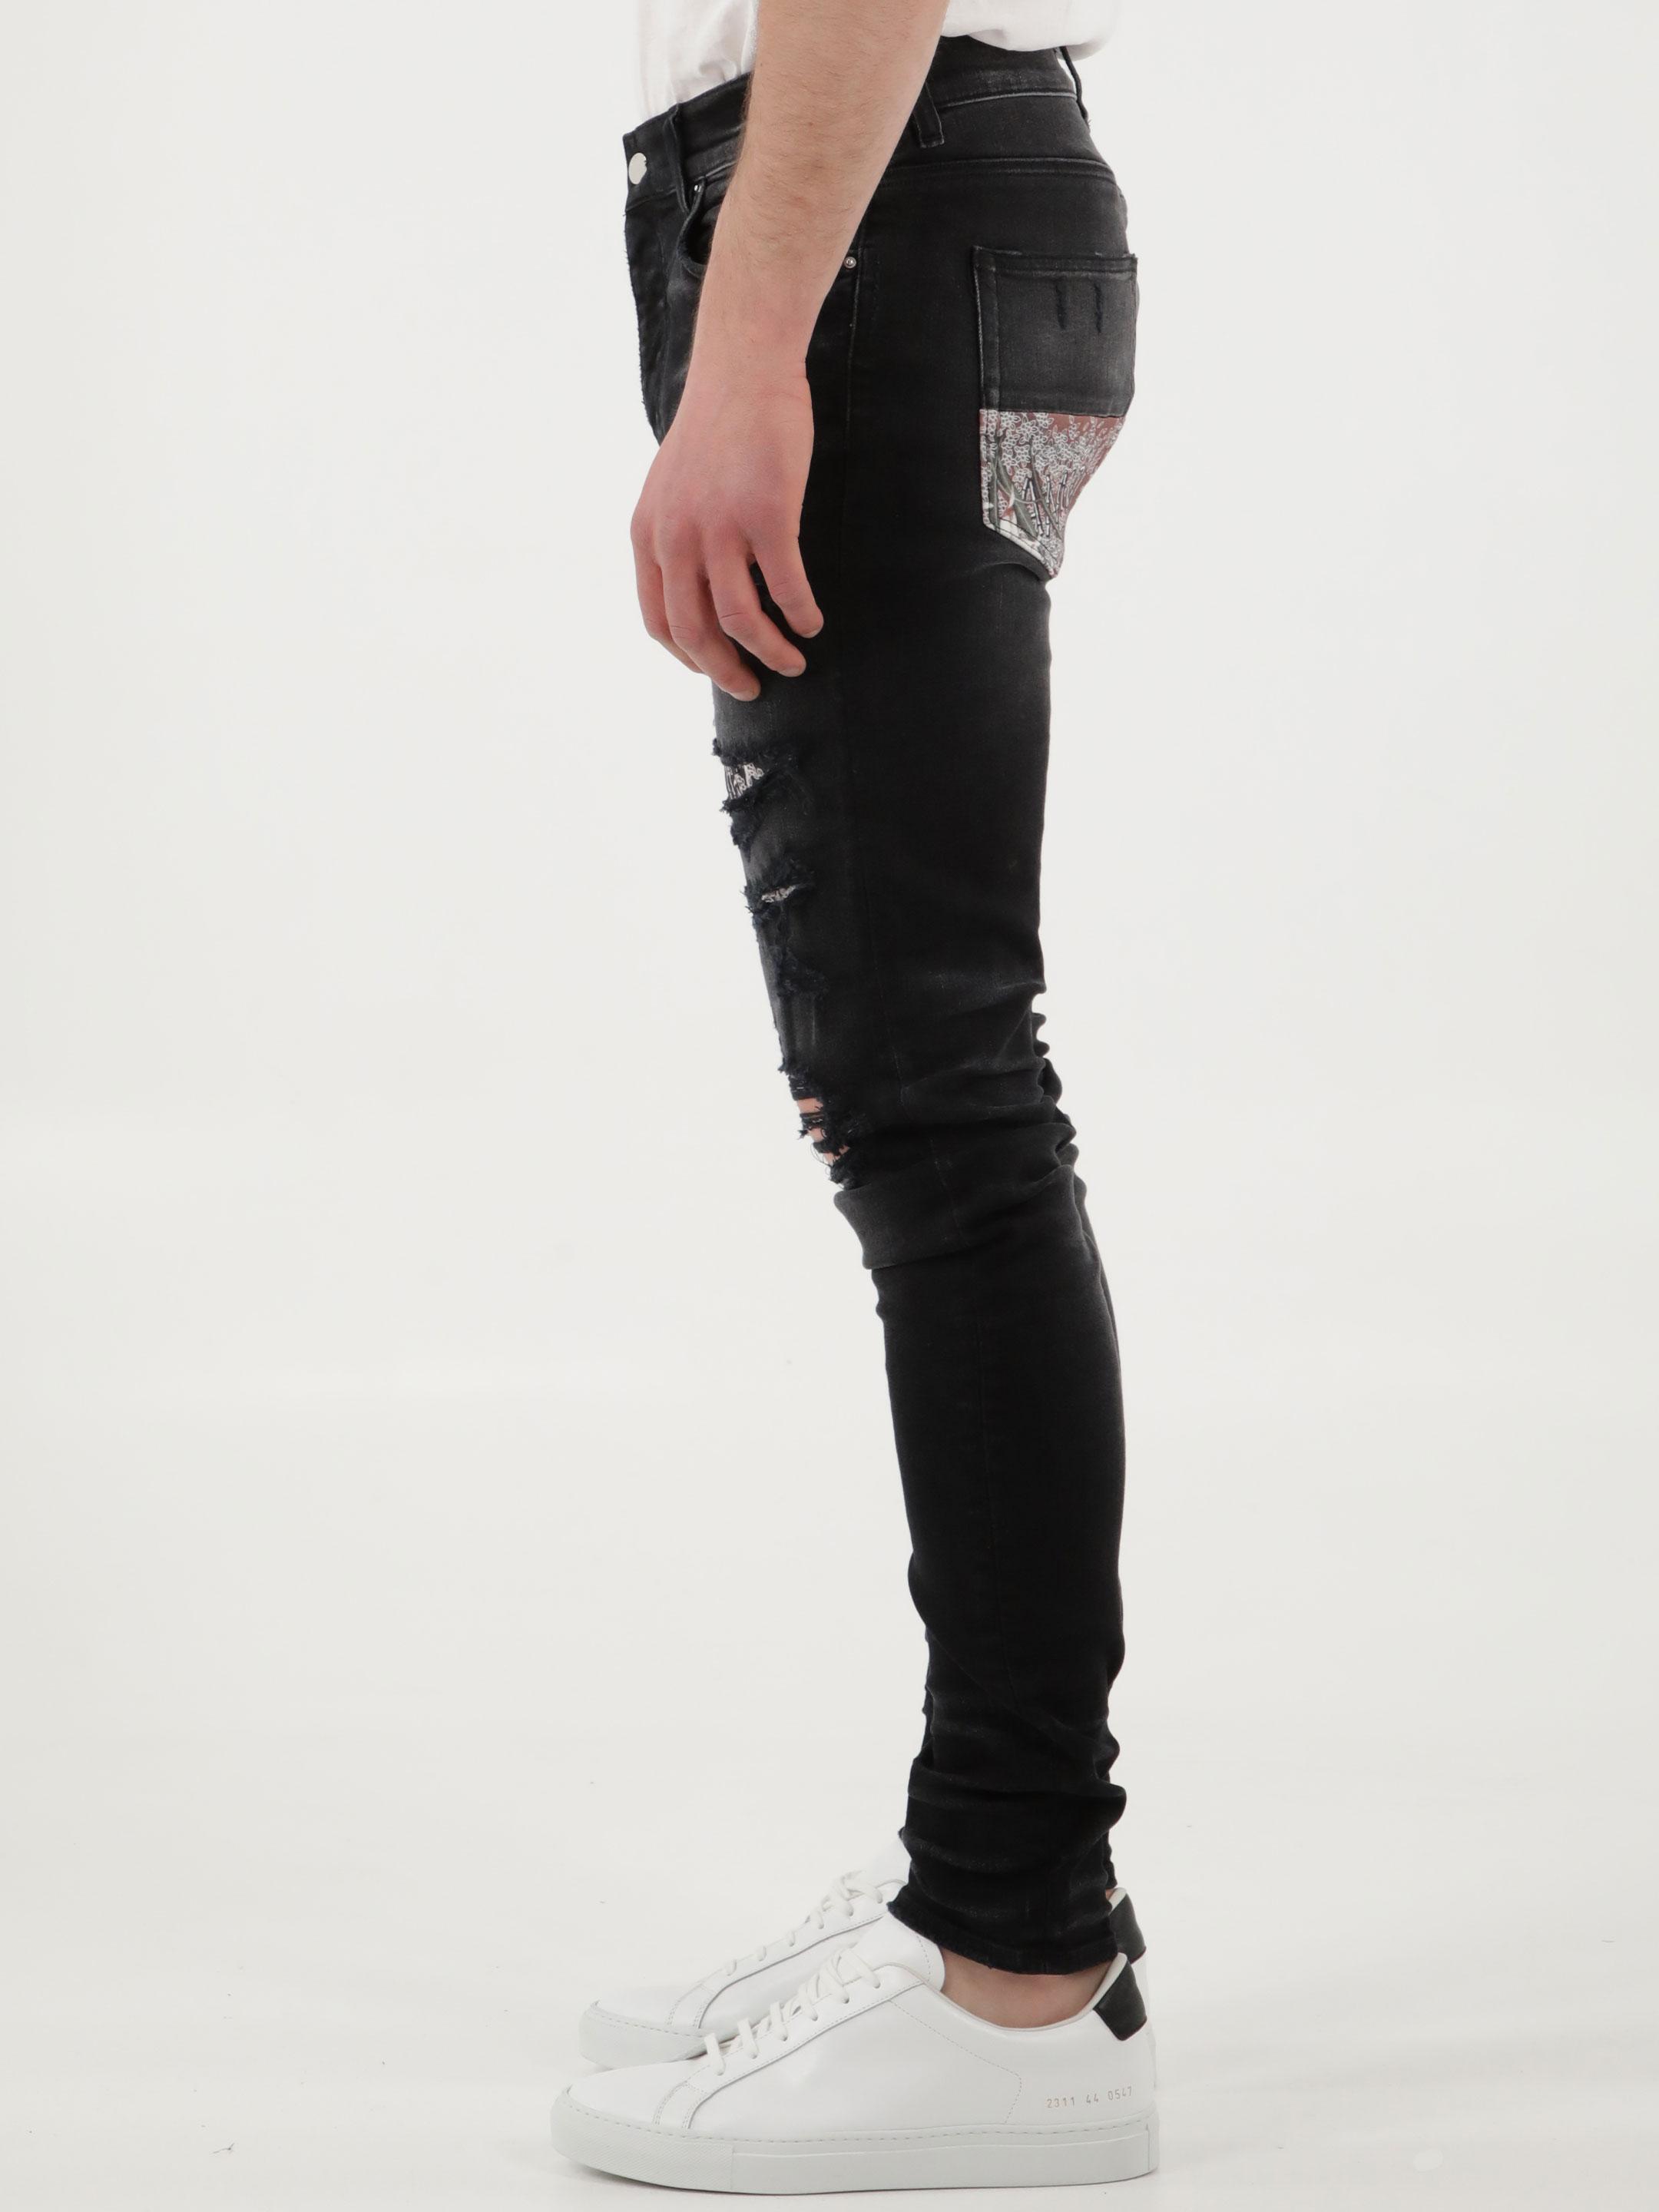 Amiri Denim Black Hibiscus Jeans for Men - Save 28% | Lyst